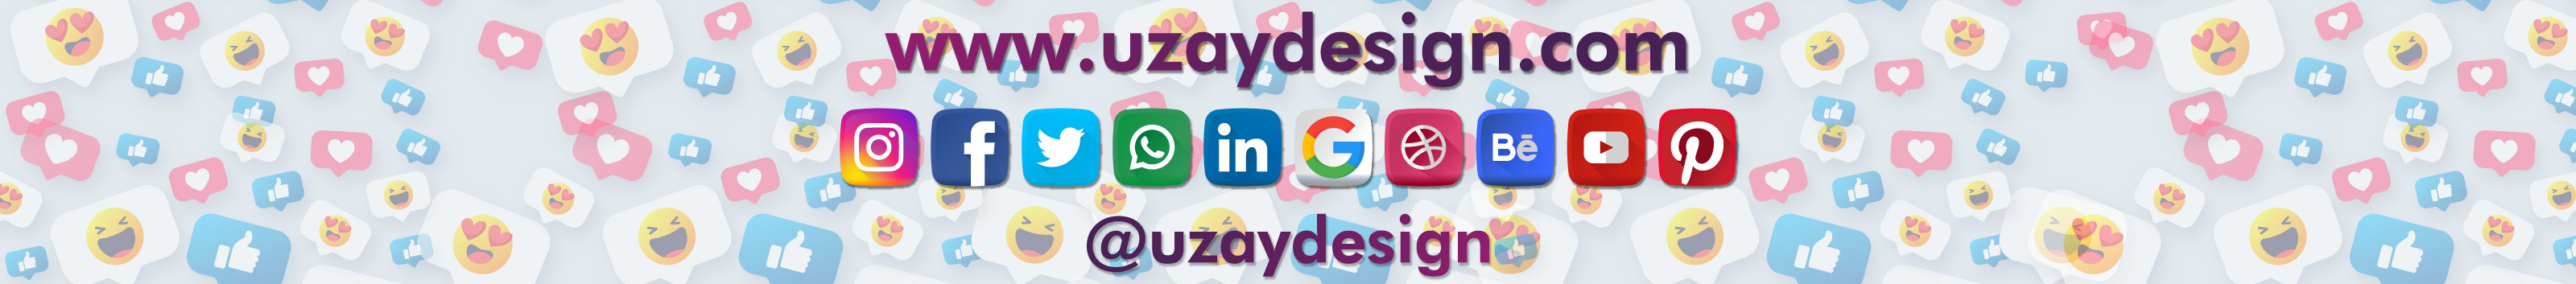 Uzay Design's profile banner